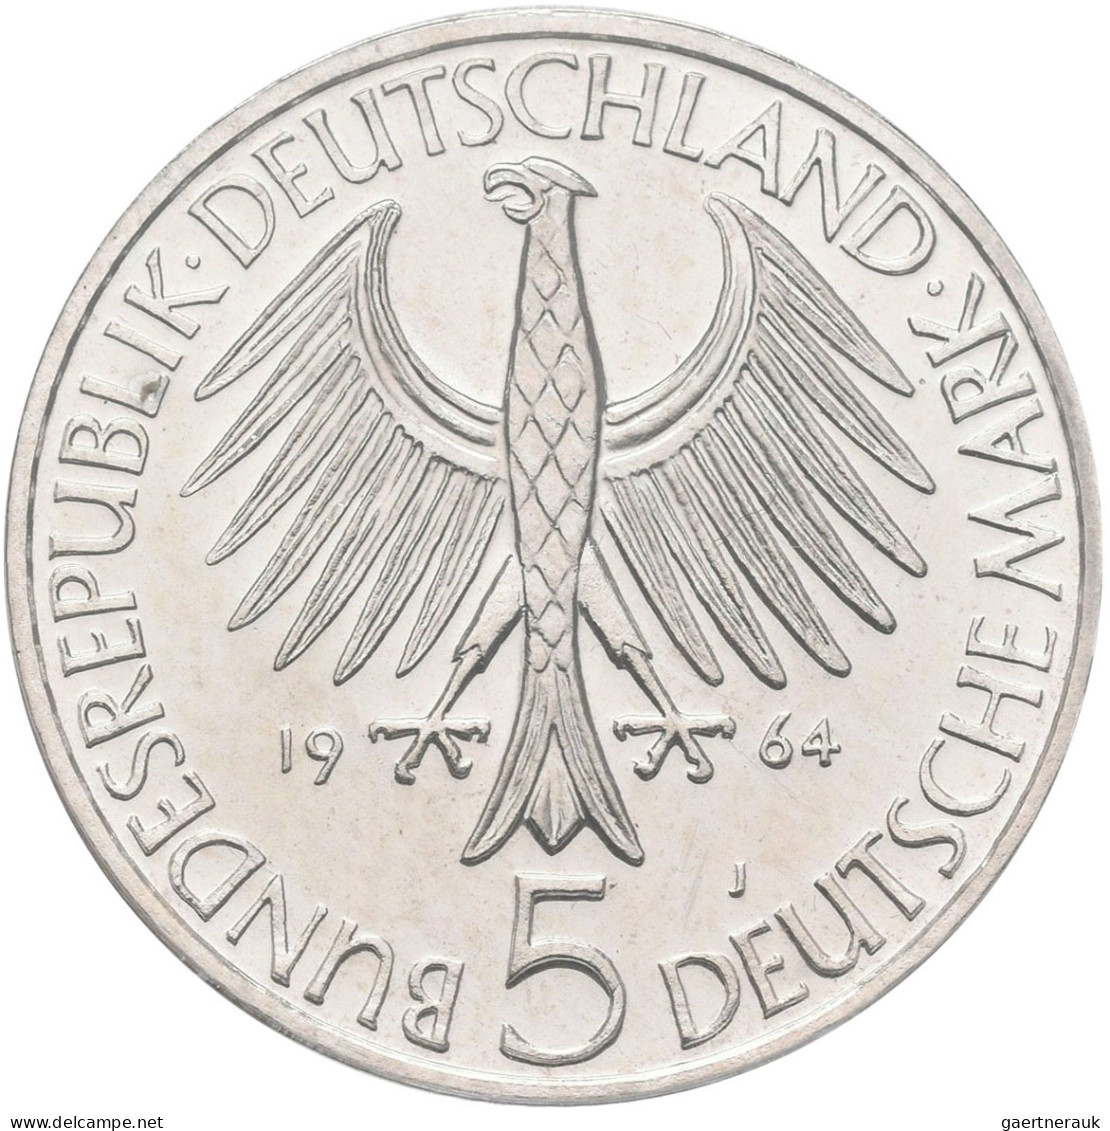 Bundesrepublik Deutschland 1948-2001: Die ersten Fünf. Von 5 DM Germanisches Mus